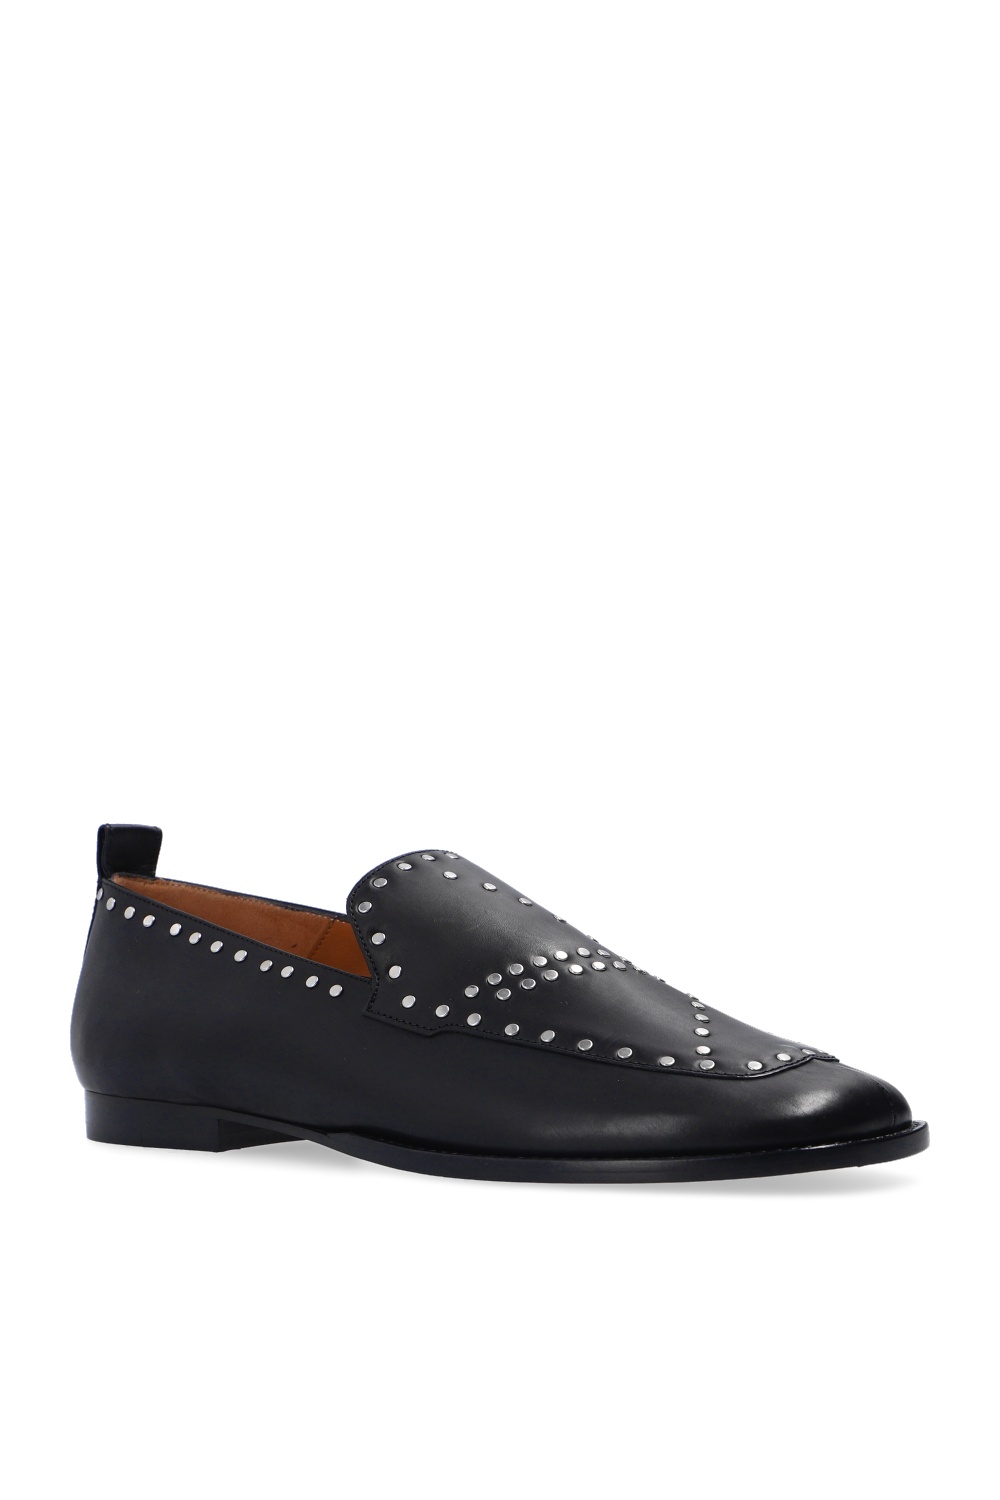 ‘Studded Loafer’ shoes Isabel Marant - Vitkac Spain